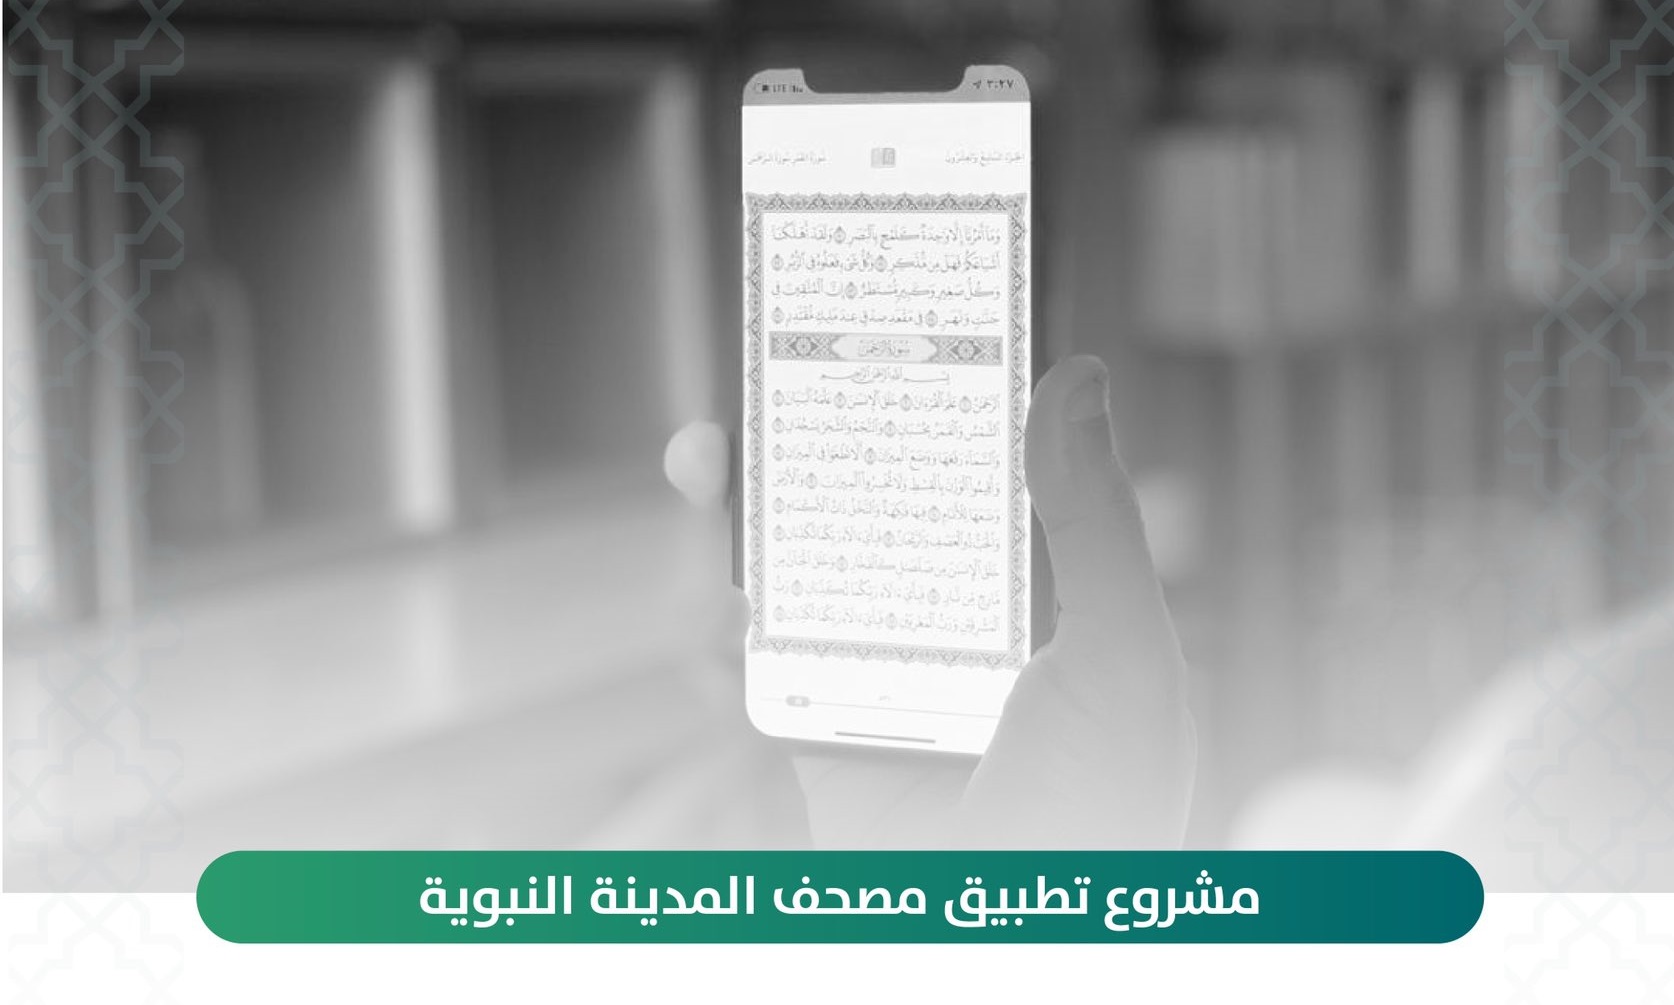 إطلاق تطبيق مصحف المدينة النبوية بـ13 لغة و7 مصاحف